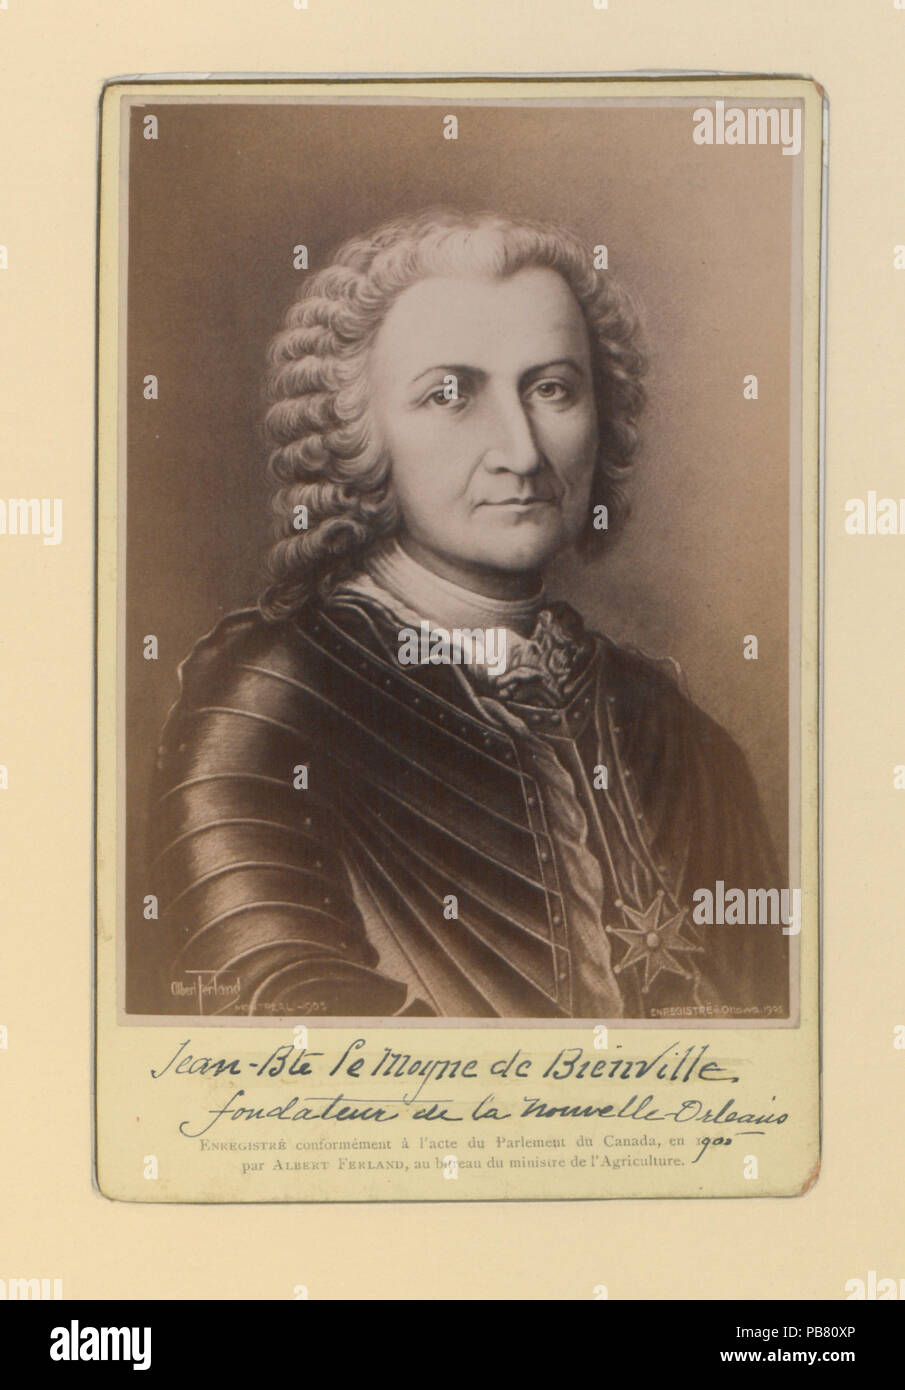 829 Jean-Bte le Moyne de Bienville Fondateur de la Nouvelle Orleans (HS85-10-16604) original Stock Photo